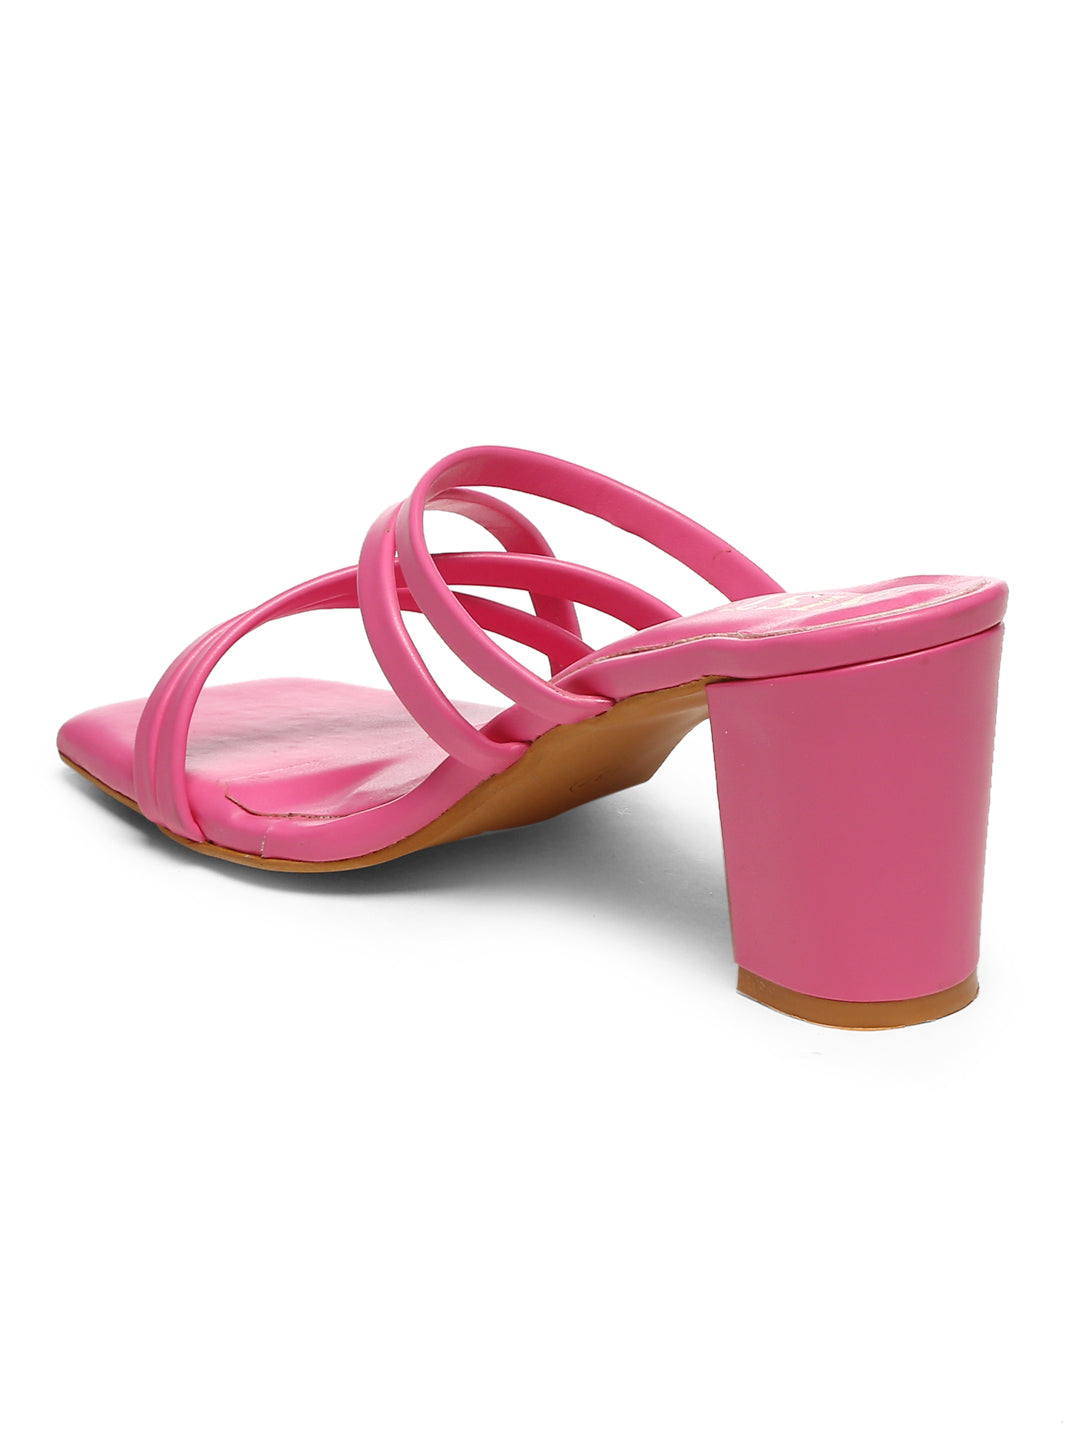 GNIST Hot Pink Strappy Block Heel